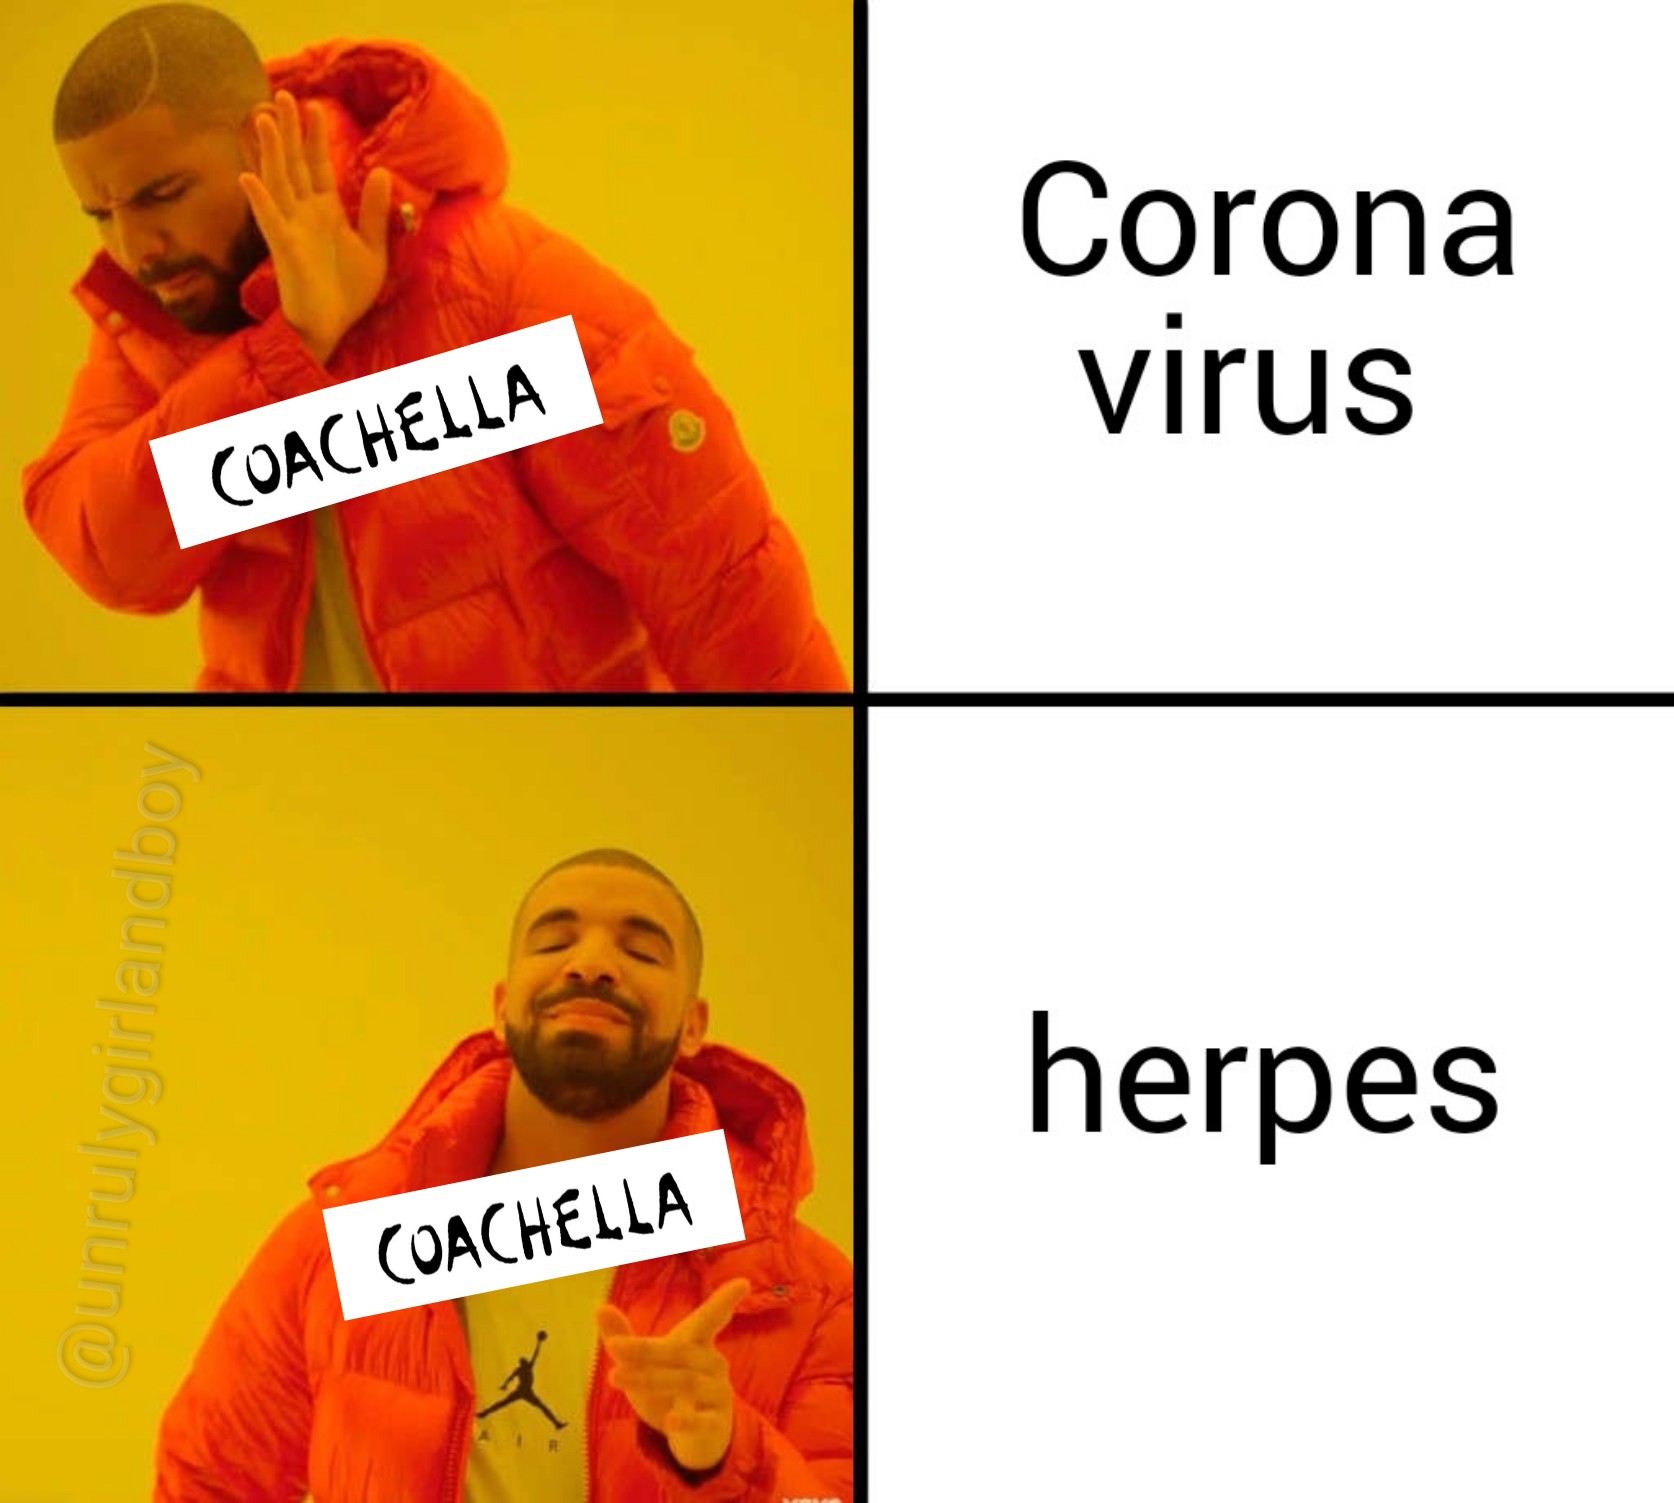 2020 new year memes - Corona virus Coachella herpes Coachella